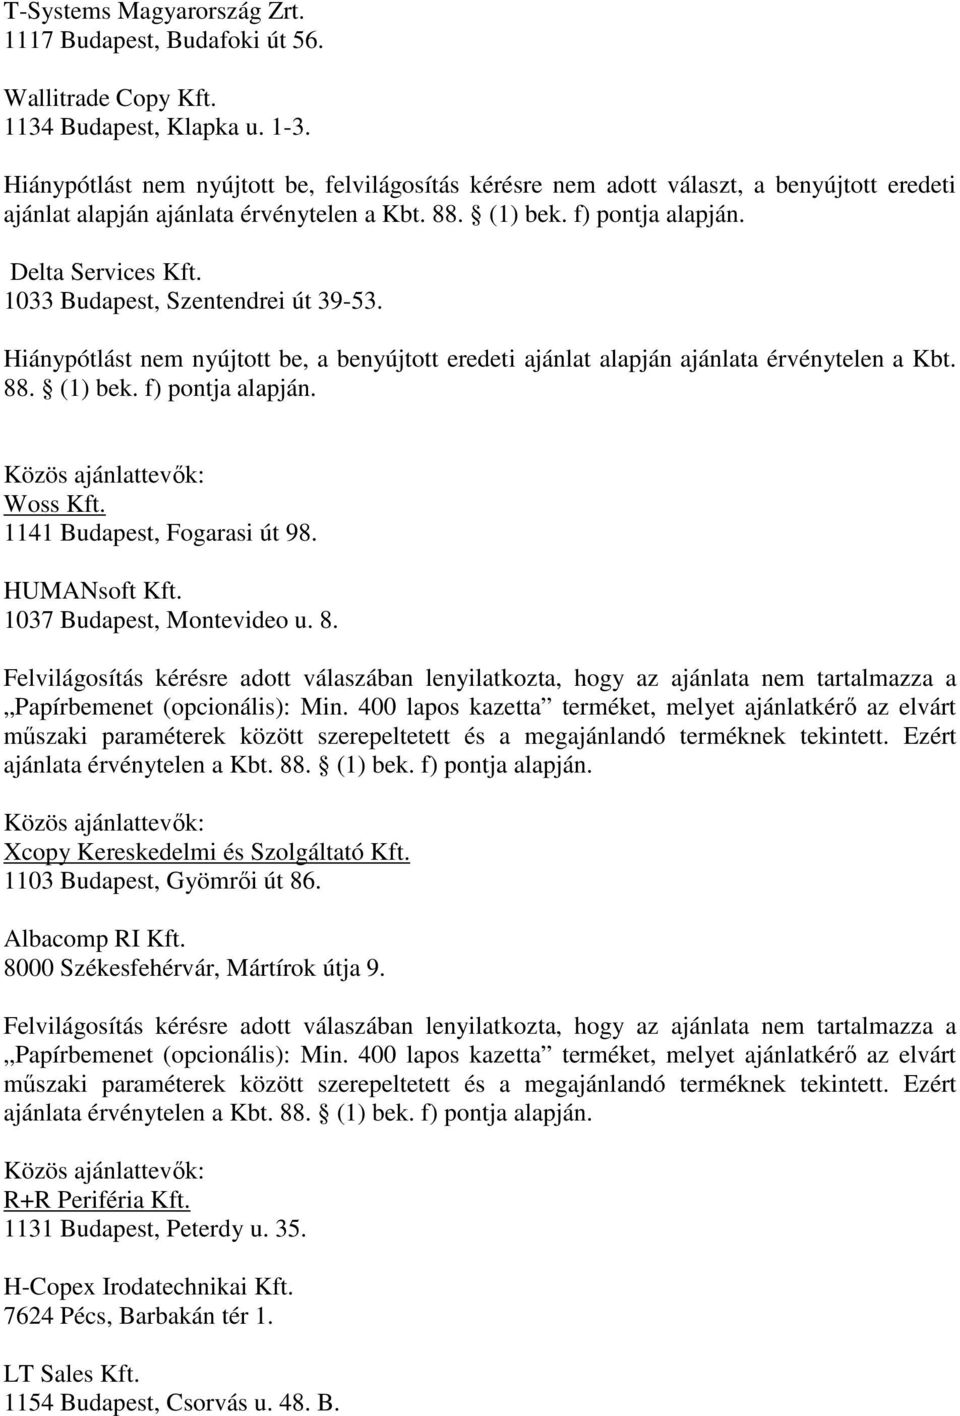 Hiánypótlást nem nyújtott be, a benyújtott eredeti ajánlat alapján ajánlata érvénytelen a Kbt. 88. (1) bek. f) pontja alapján. Woss Kft. 1141 Budapest, Fogarasi út 98. HUMANsoft Kft.